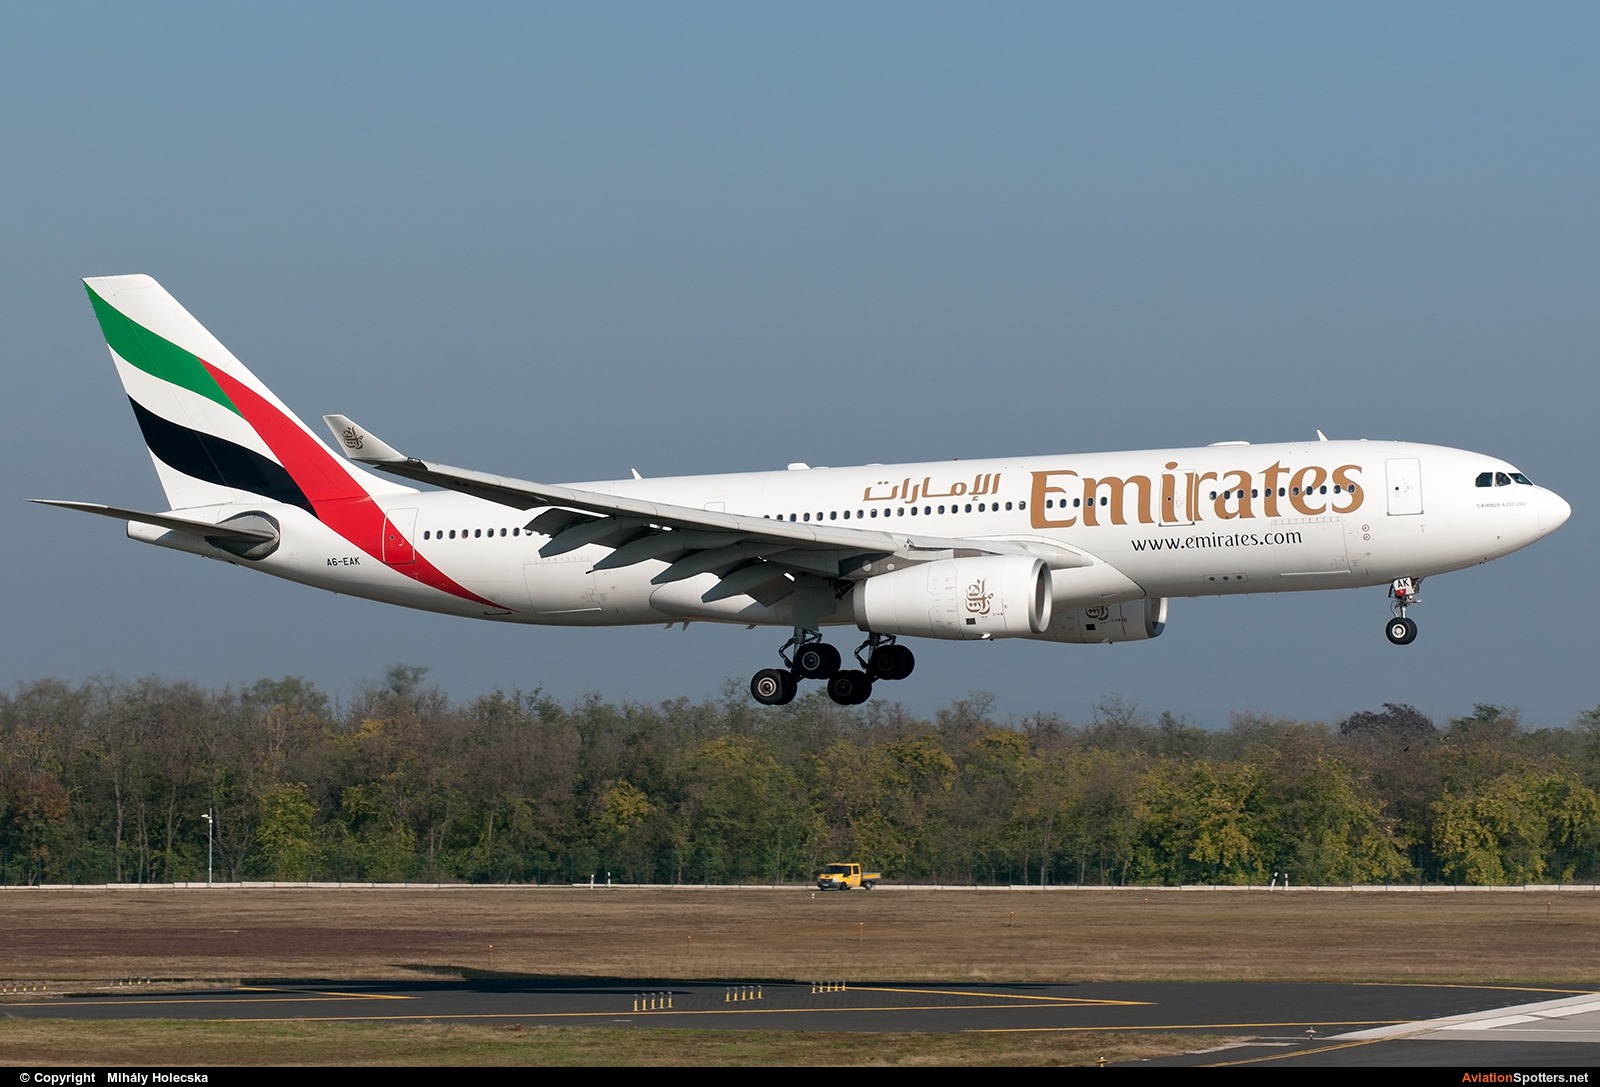 Emirates Airlines  -  A330-200  (A6-EAK) By Mihály Holecska (Misixx)